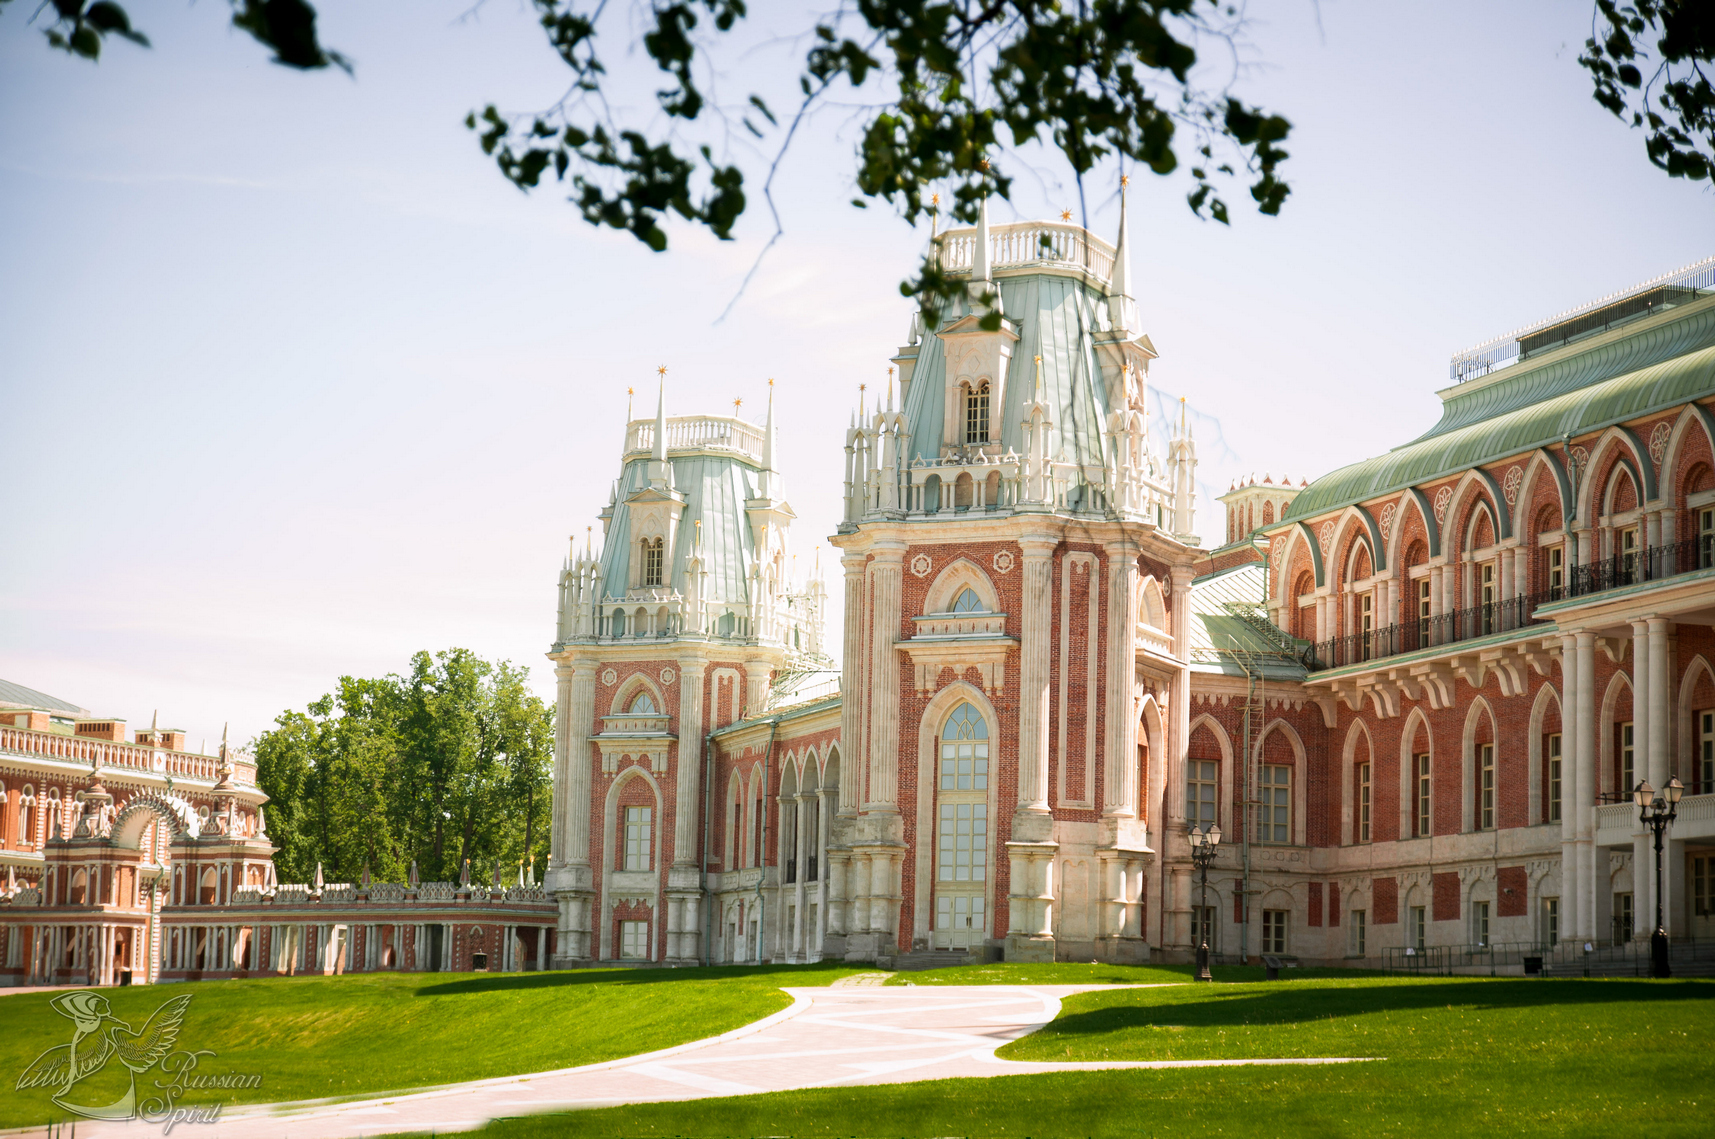 Big palace of Tsaritsyno